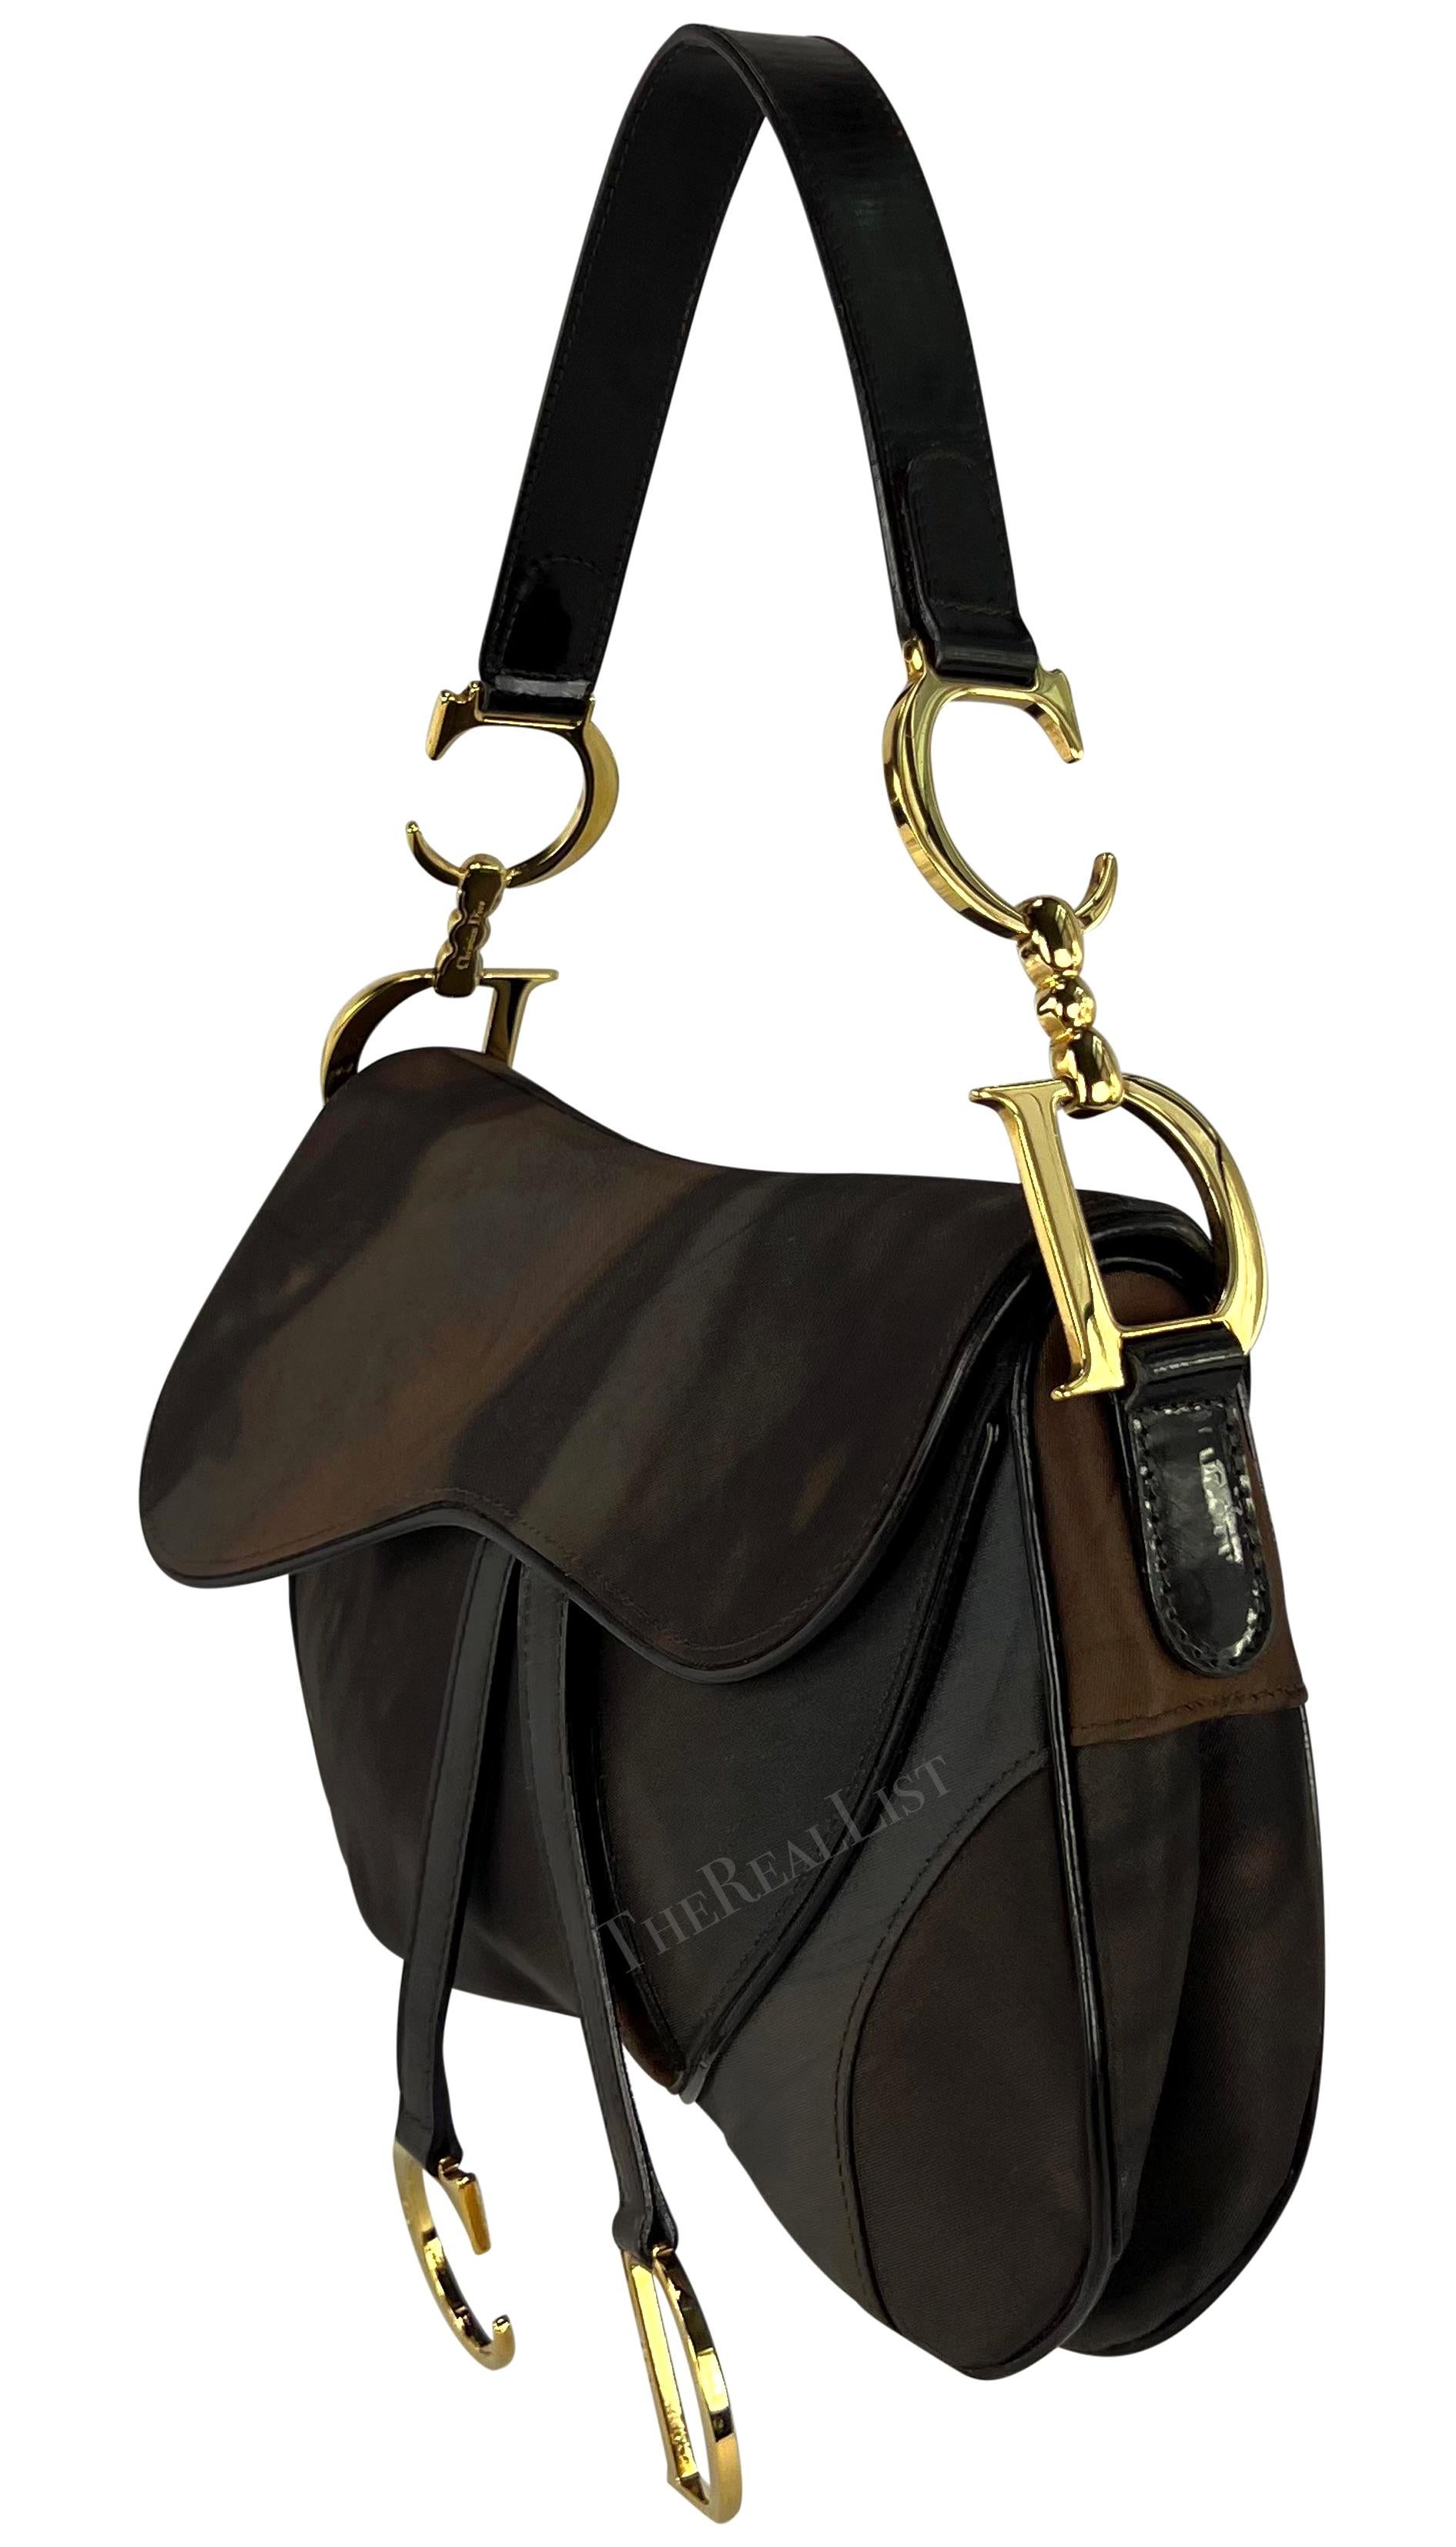 Voici un fabuleux sac à main double Christian Dior tie-dye, dessiné par John Galliano. Issu de la collection automne/hiver 2001, ce sac à bandoulière chic en nylon est le complément idéal de la garde-robe de l'an 2000. Il est agrémenté d'un